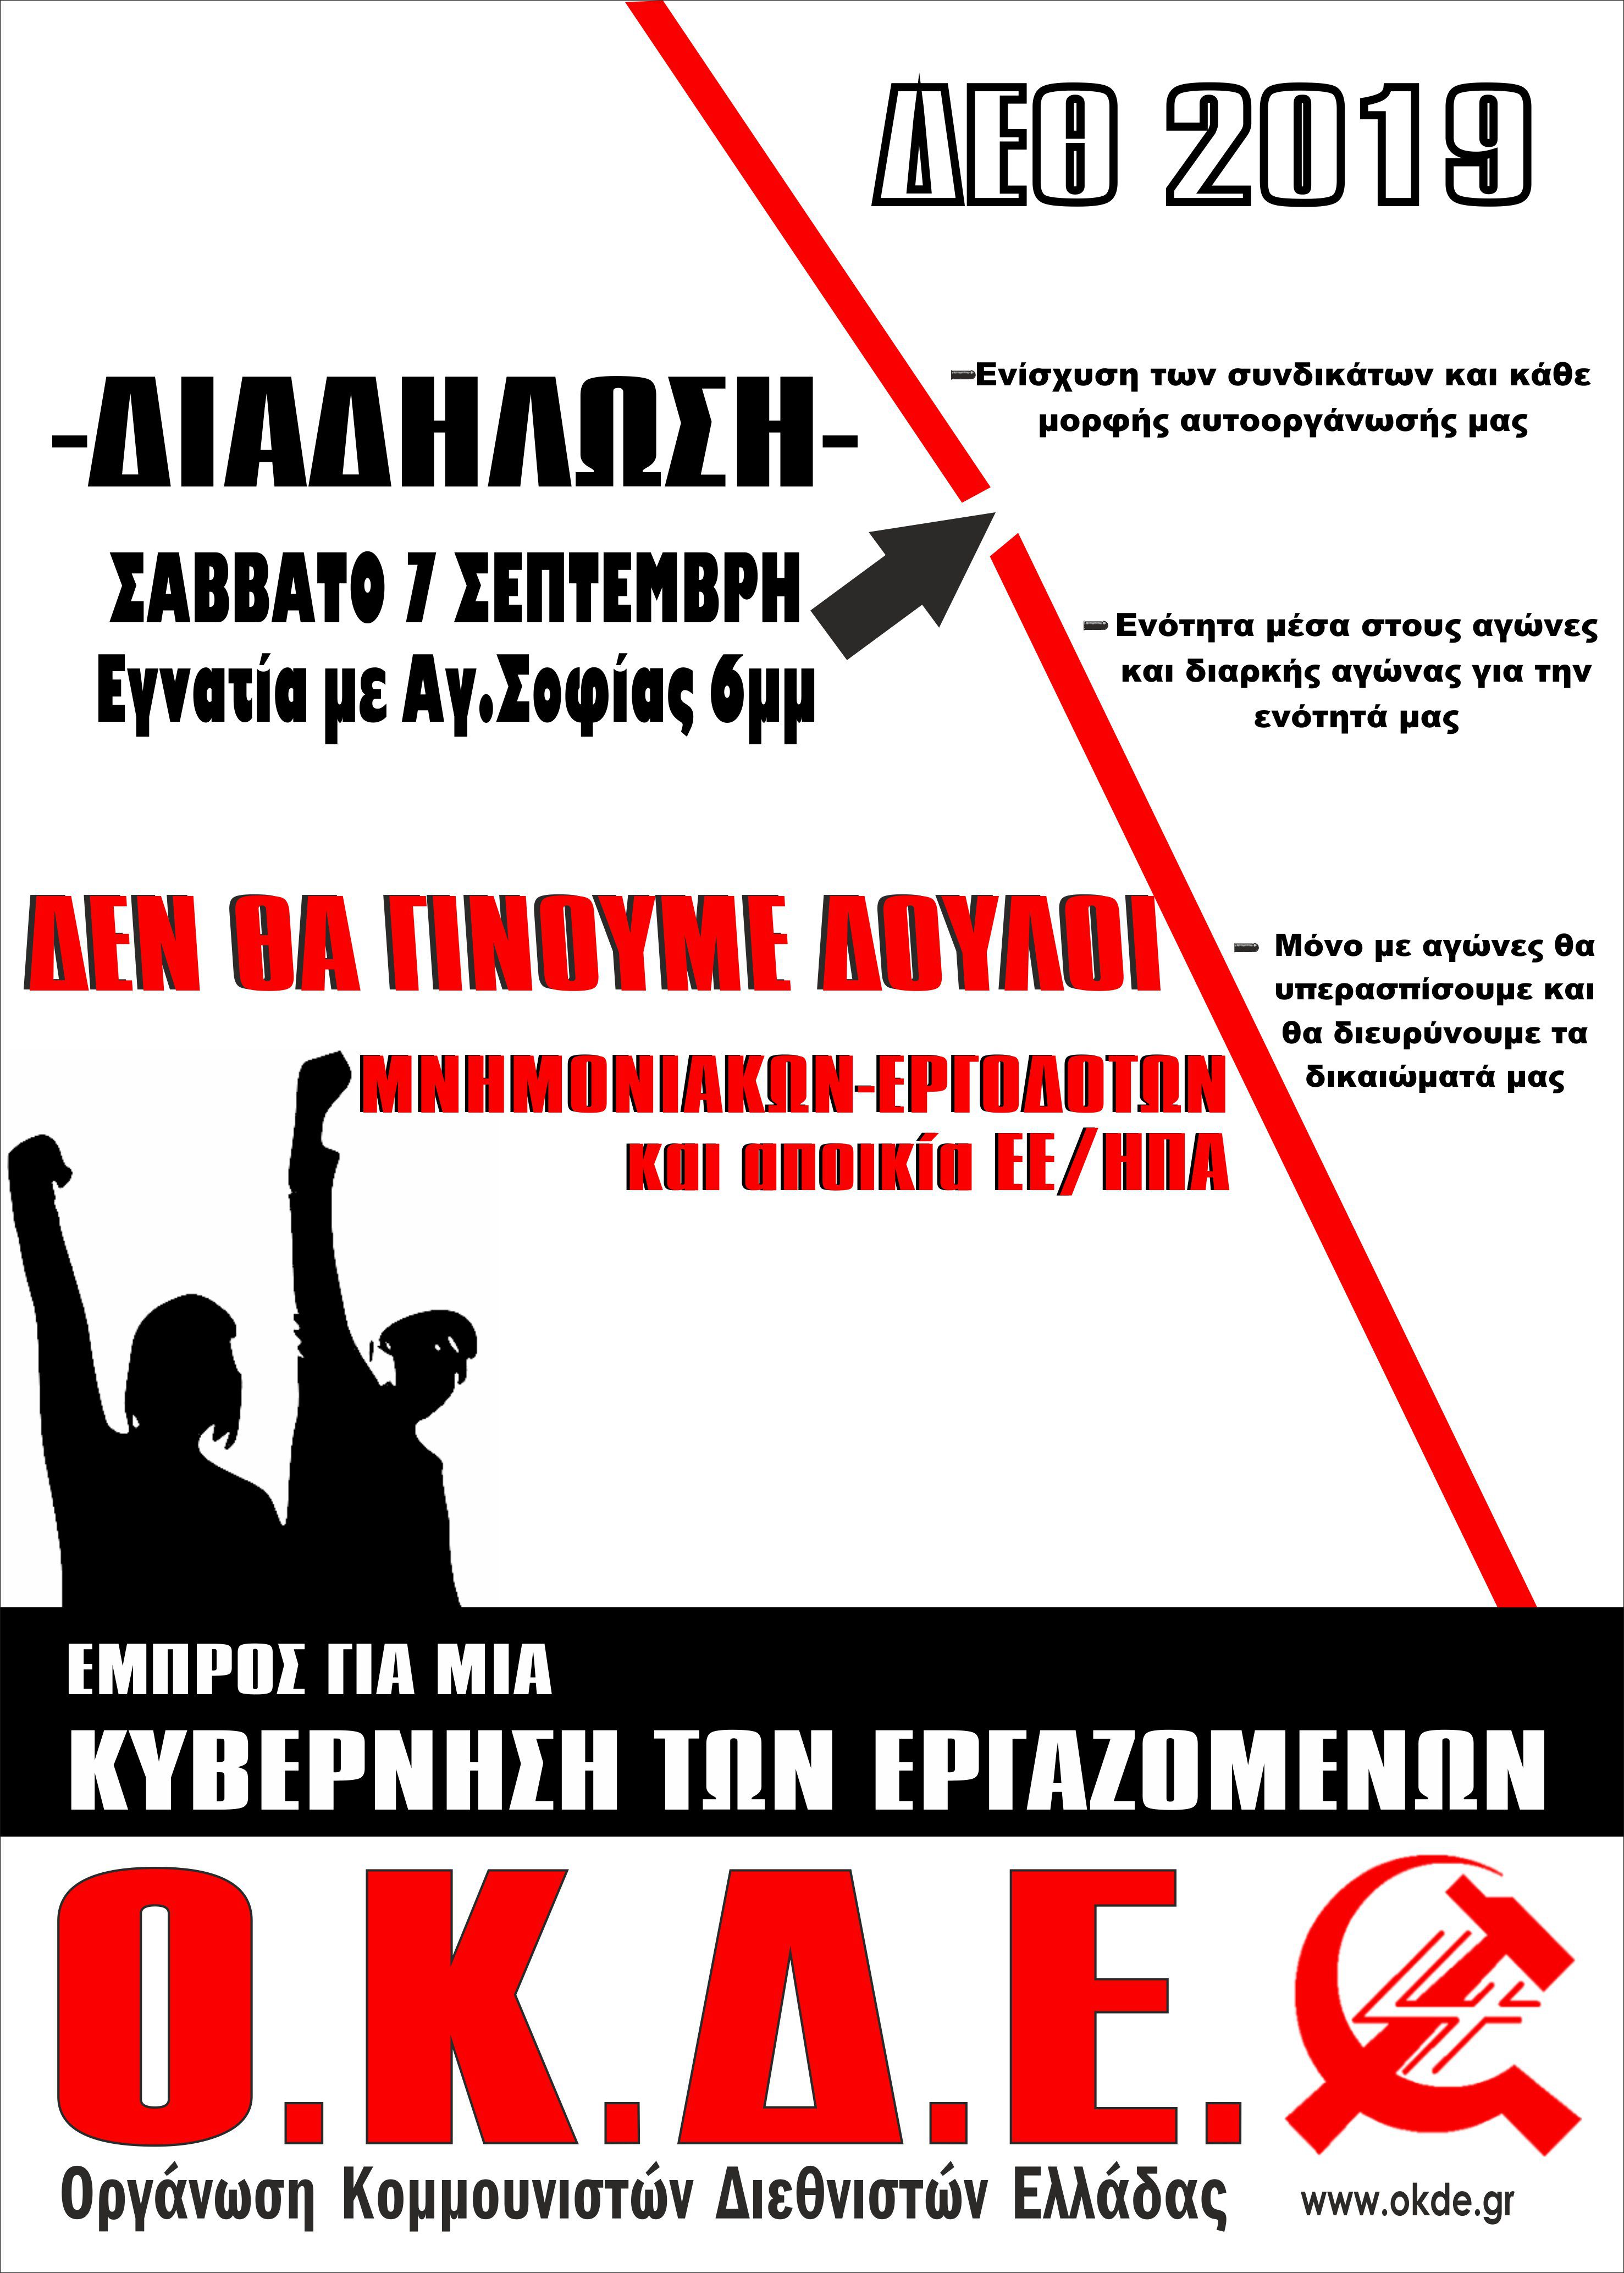 Διαδηλώνουμε στη ΔΕΘ – Σάββατο 7/9, 18:00, Εγνατία με Αγ. Σοφίας